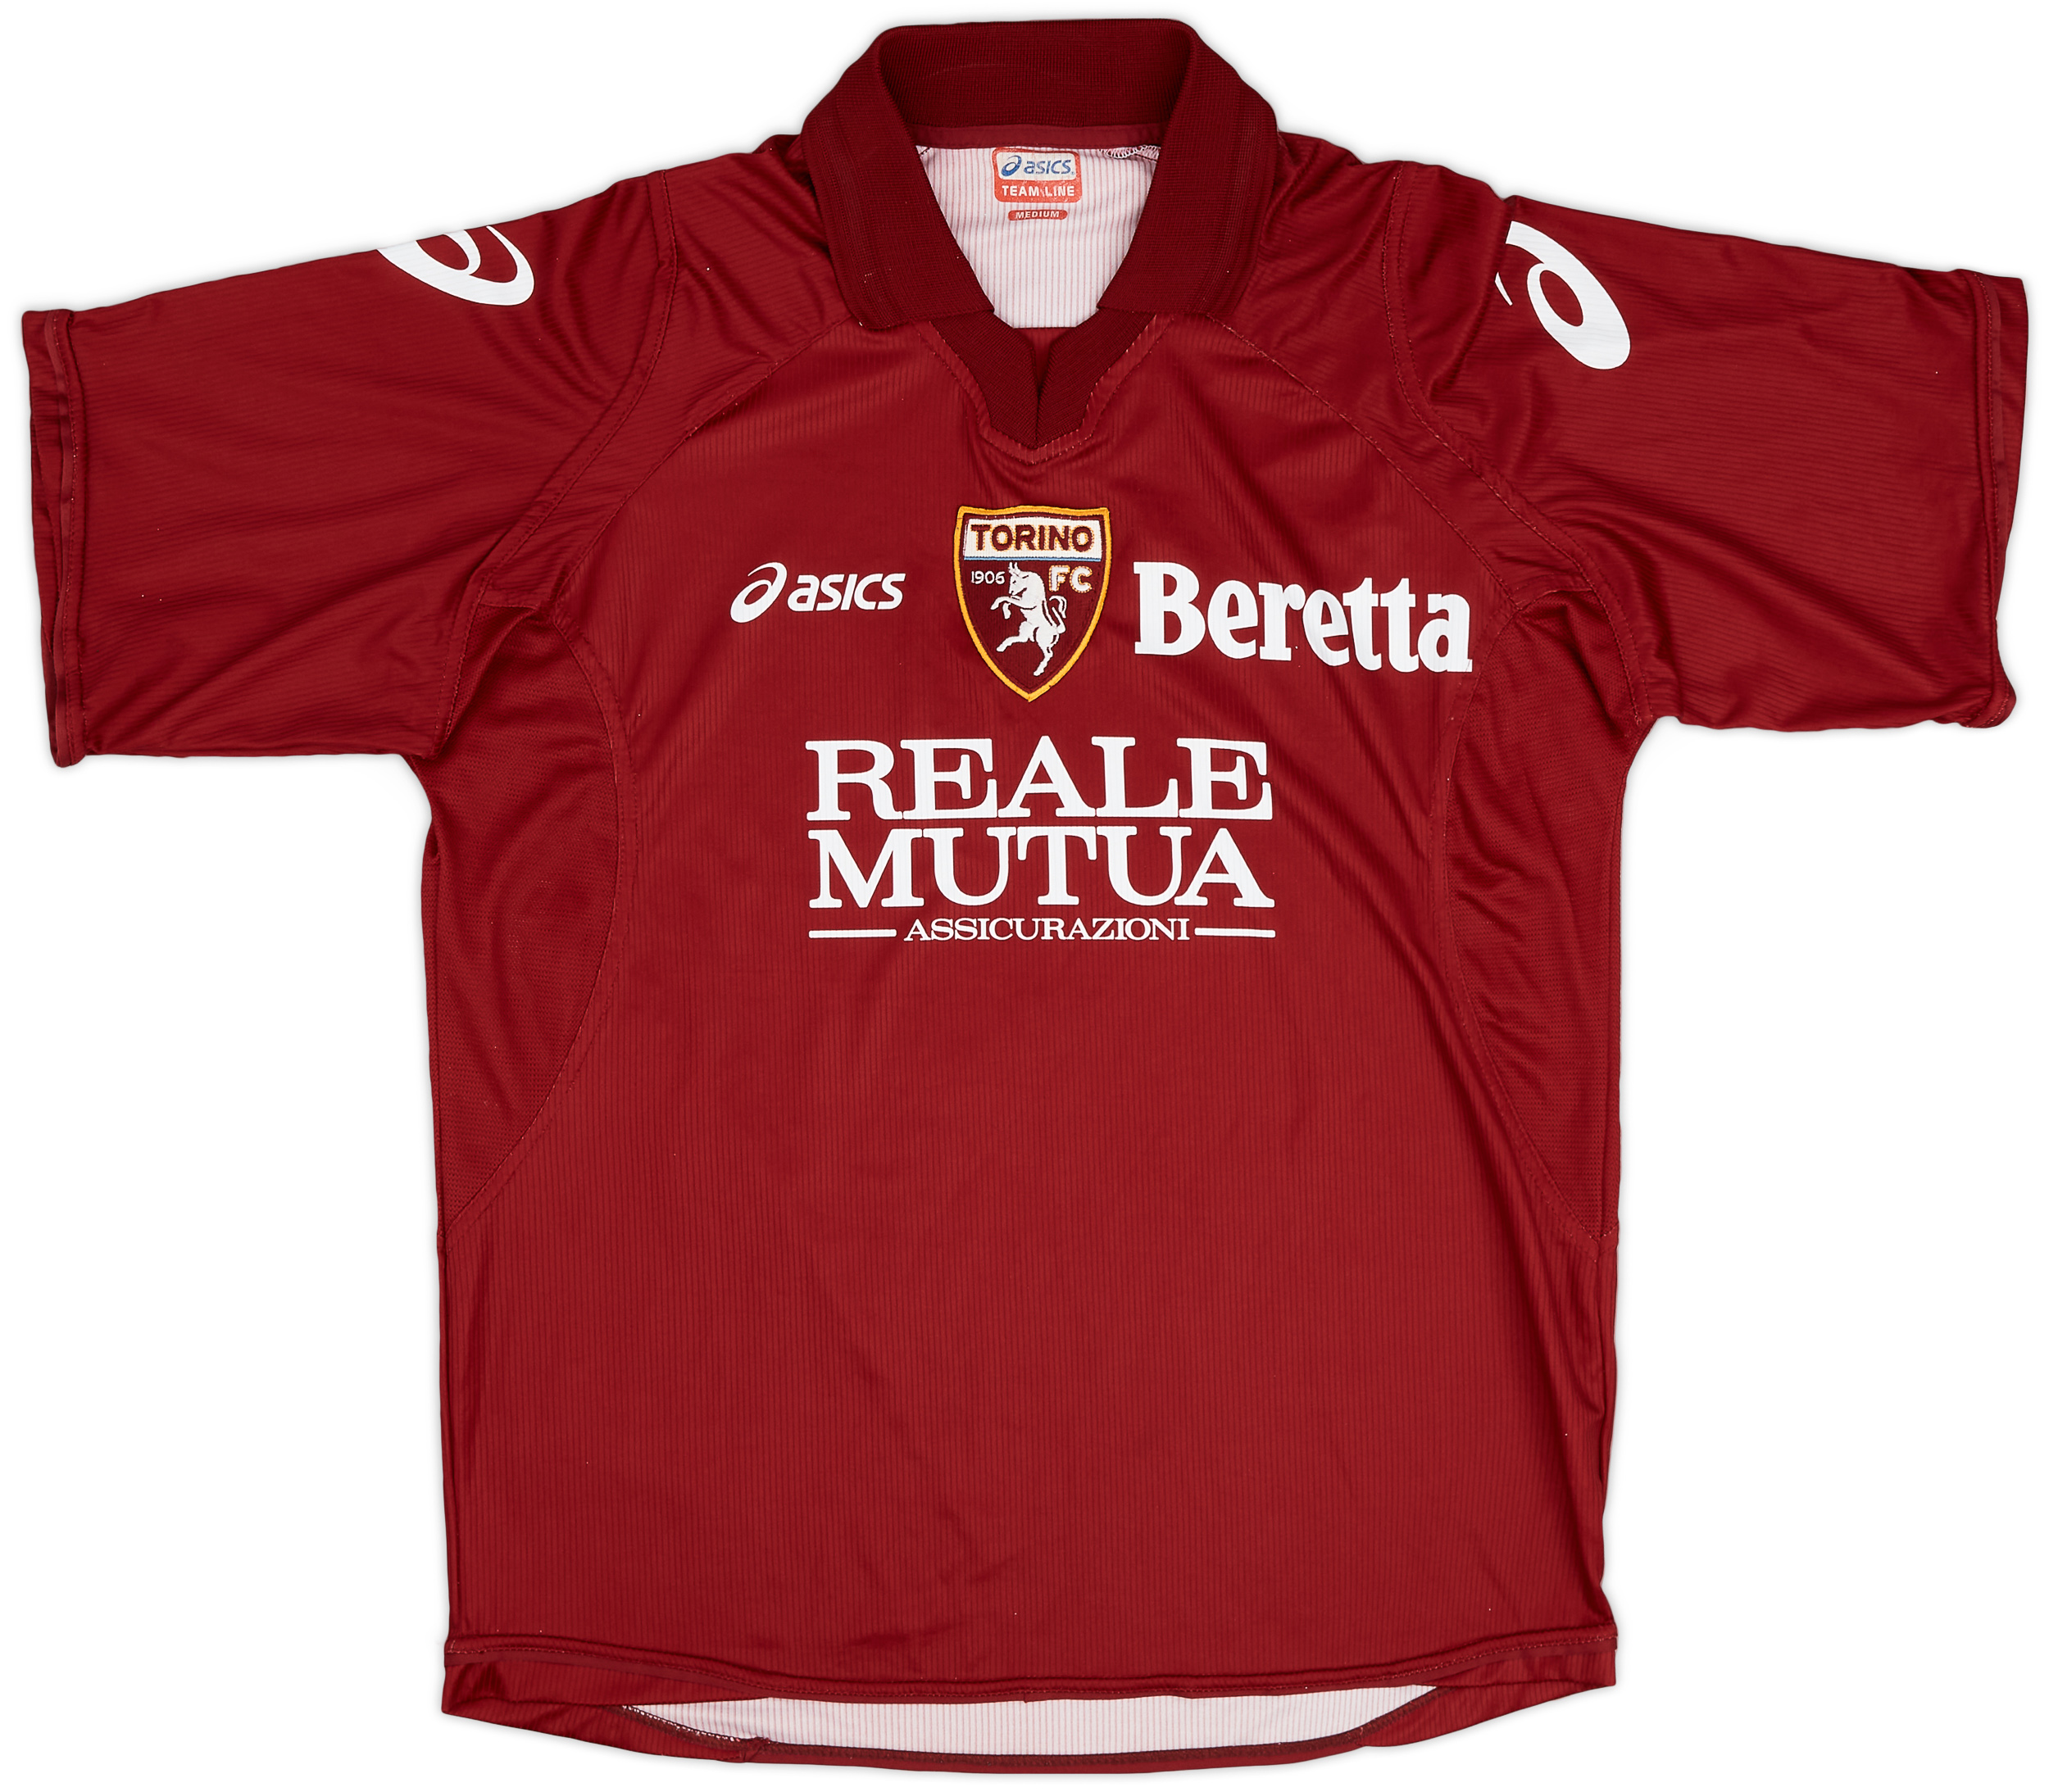 2006-07 Torino Home Shirt - 8/10 - ()